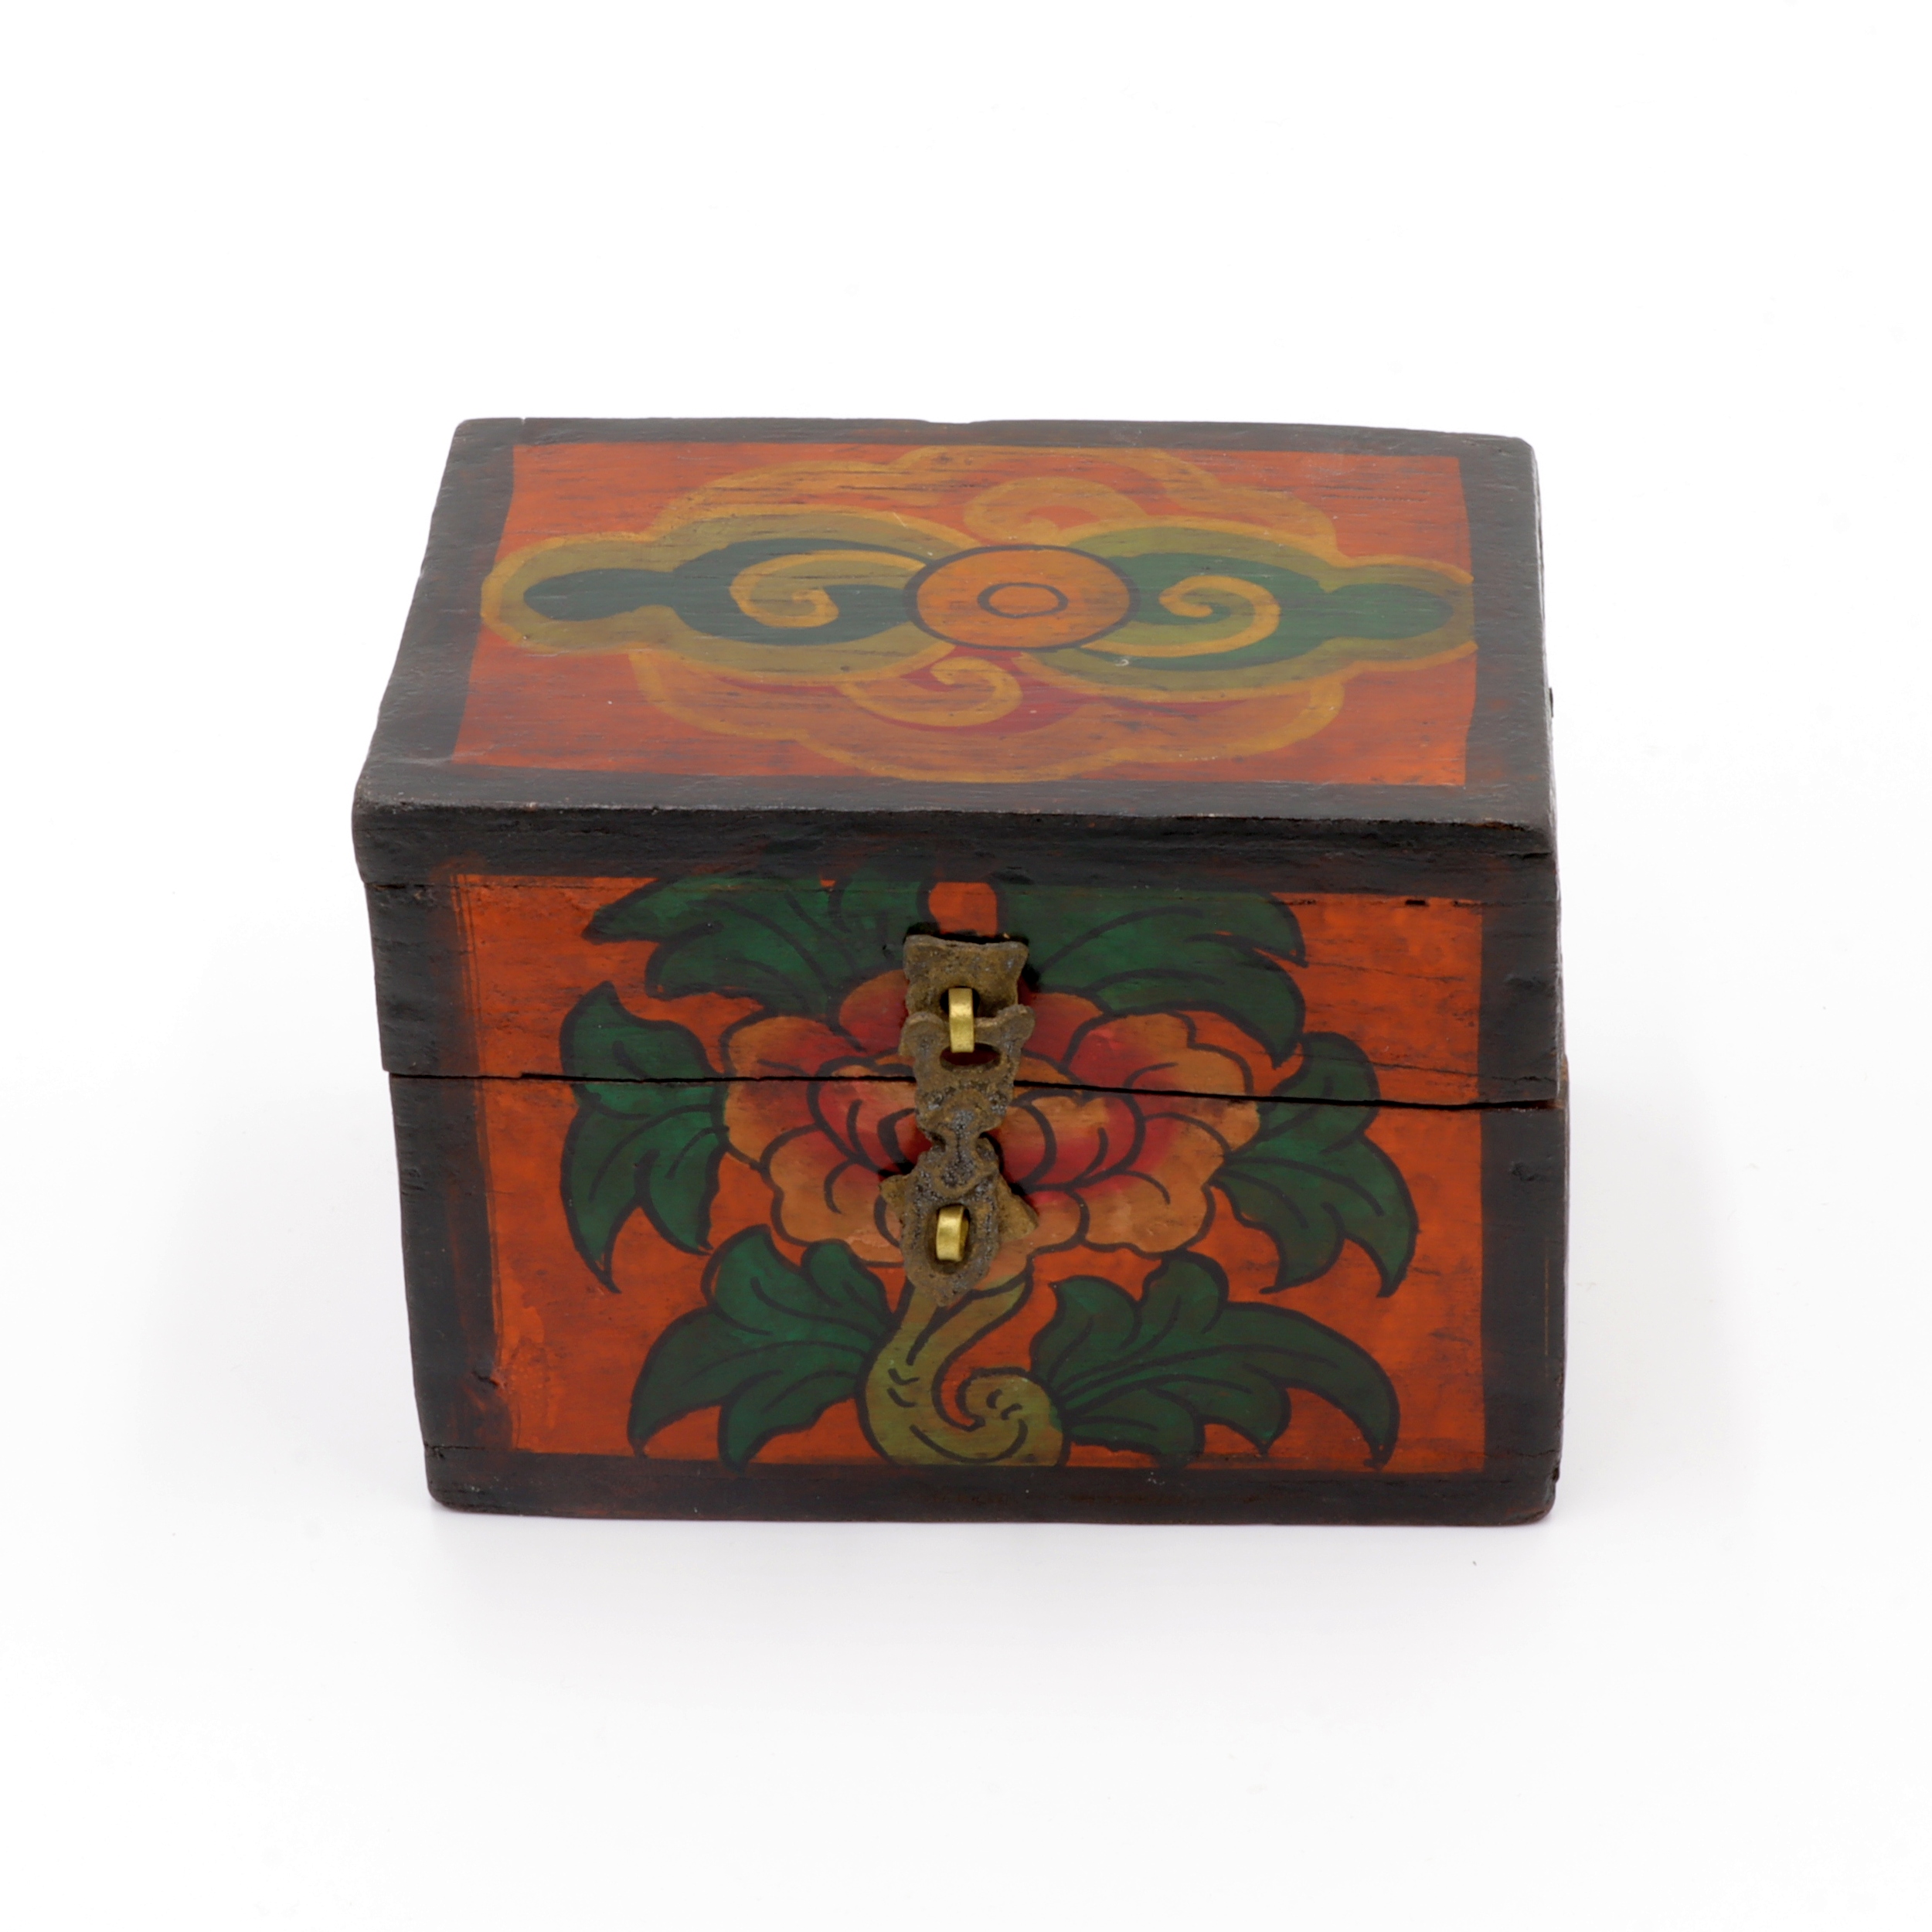 Handbemalte Kiste aus Holz - Lotus, Endlosknoten - Truhen Design - typisch nepalesiche Farben - dunkel - fair gehandelt aus Nepal